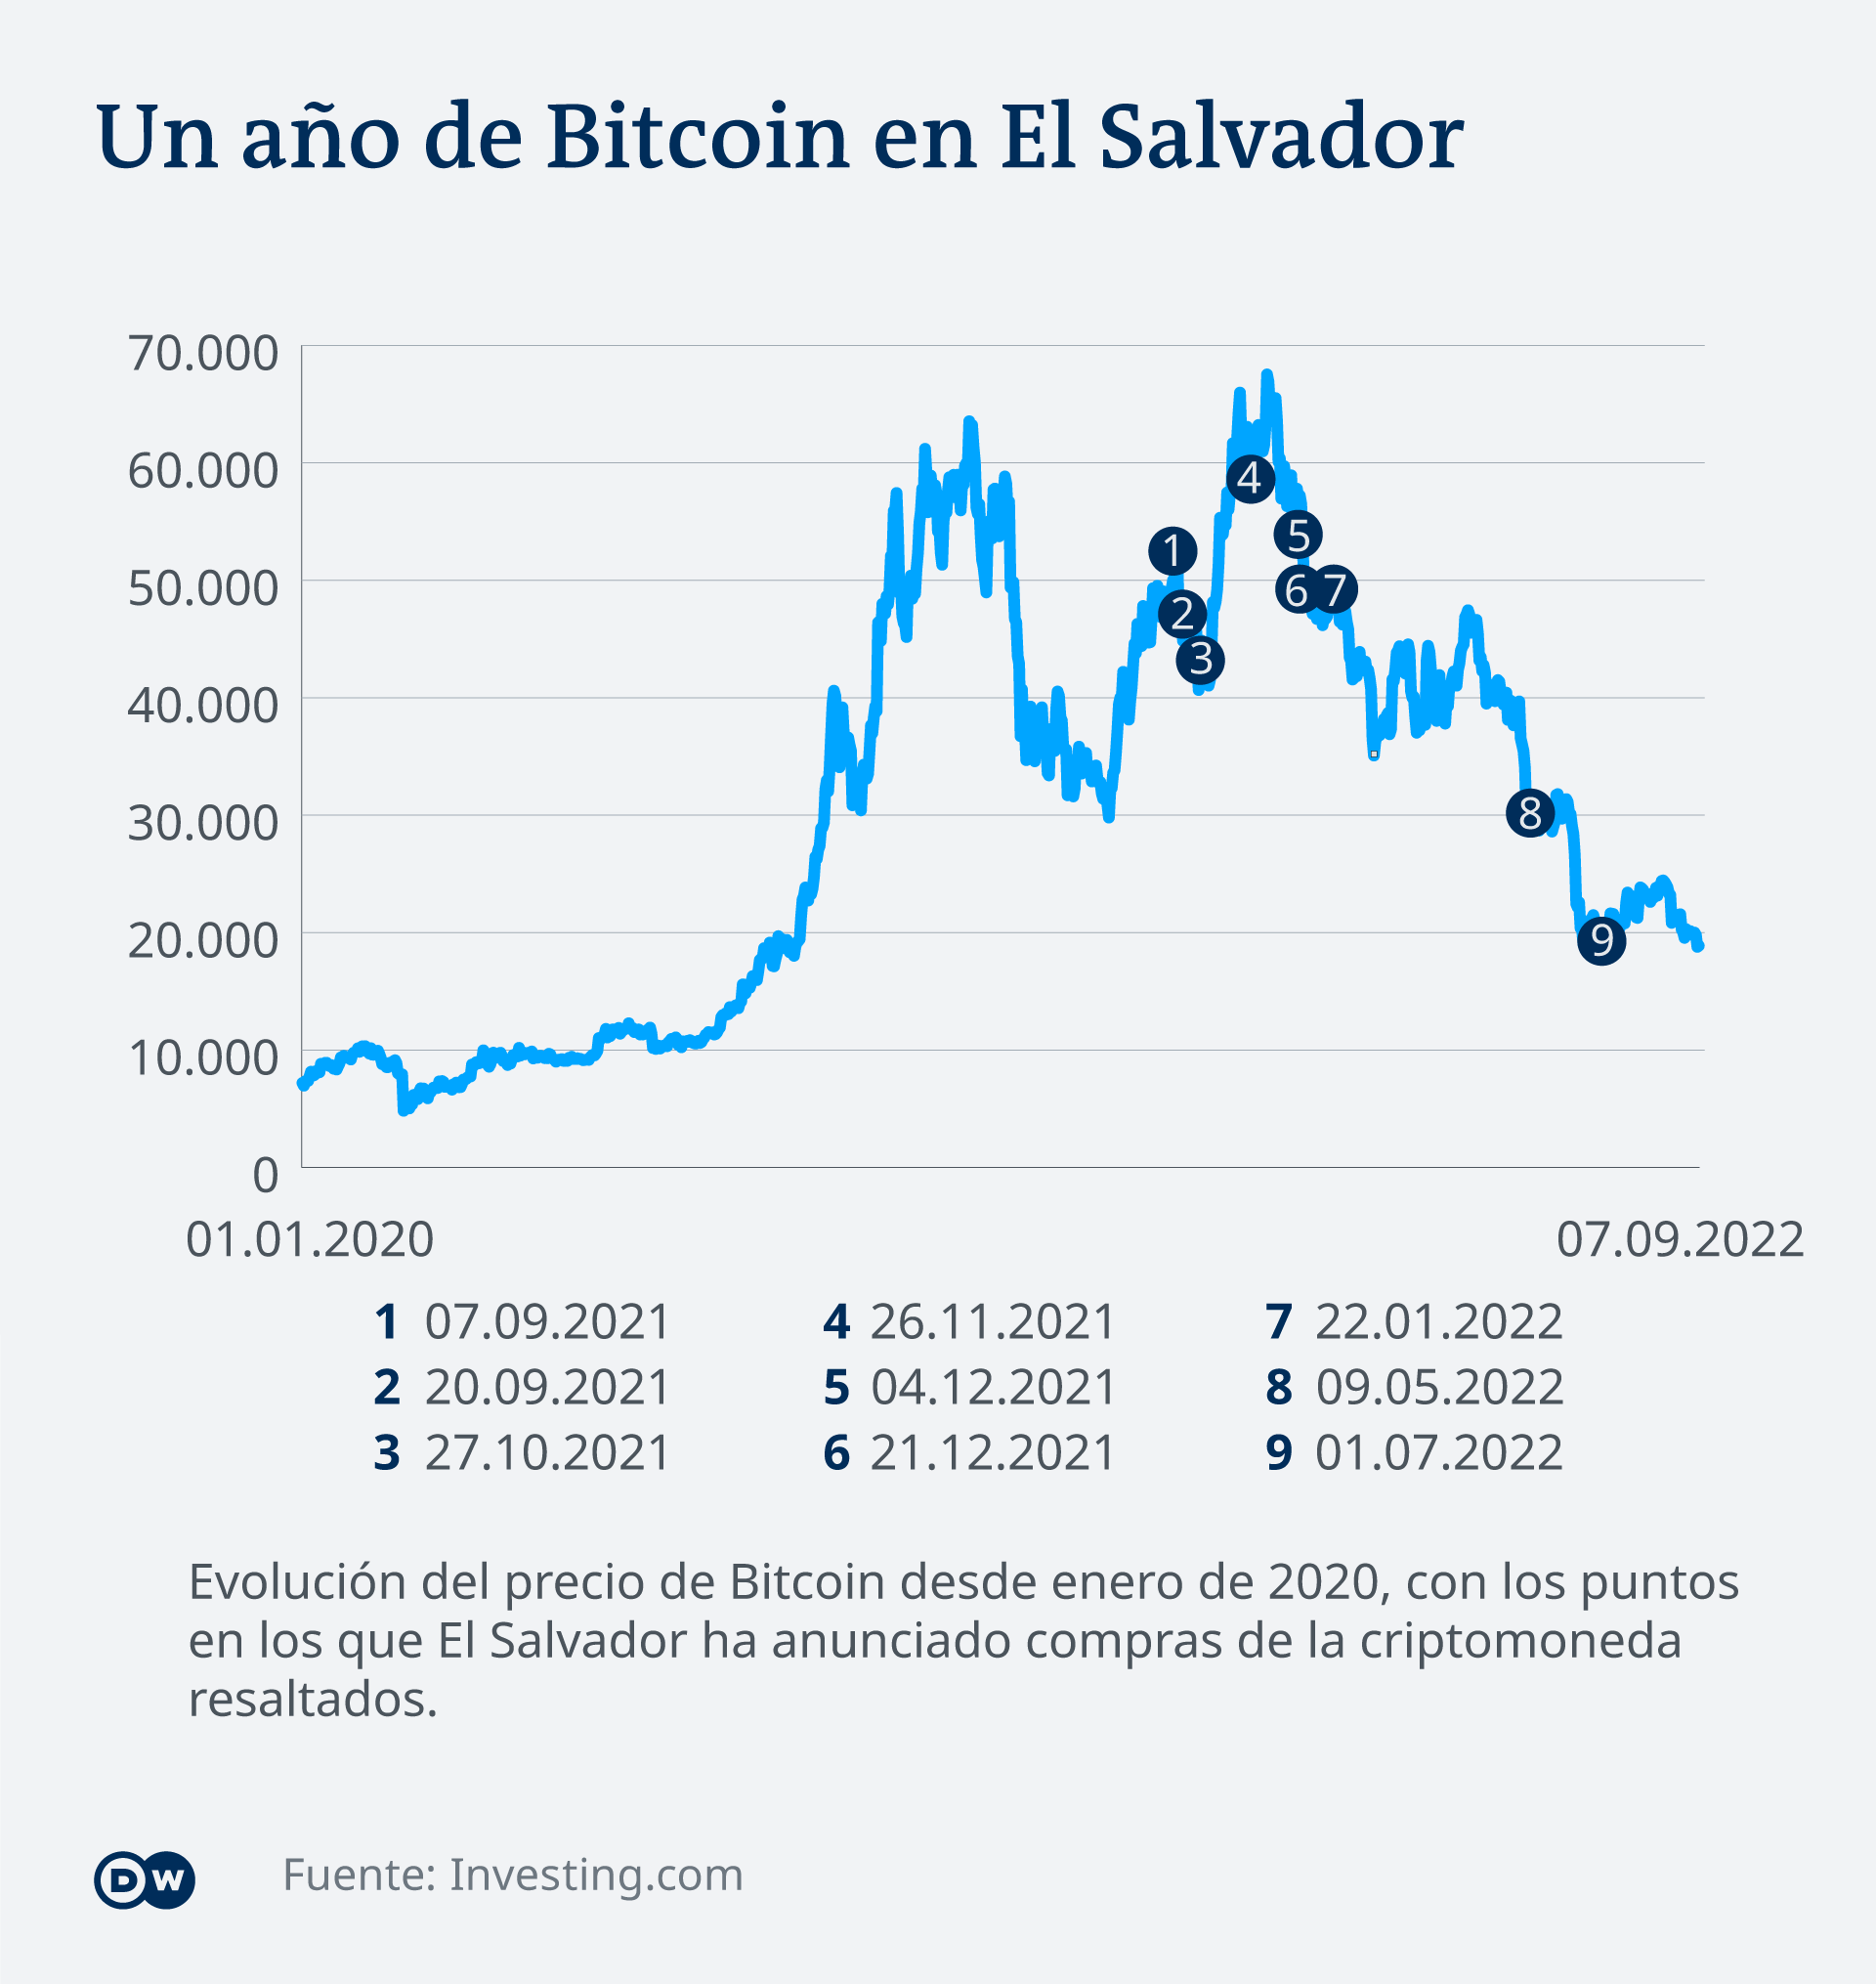 Los cambios en el precio del bitcoin en El Salvador desde 2020 al 2022. 